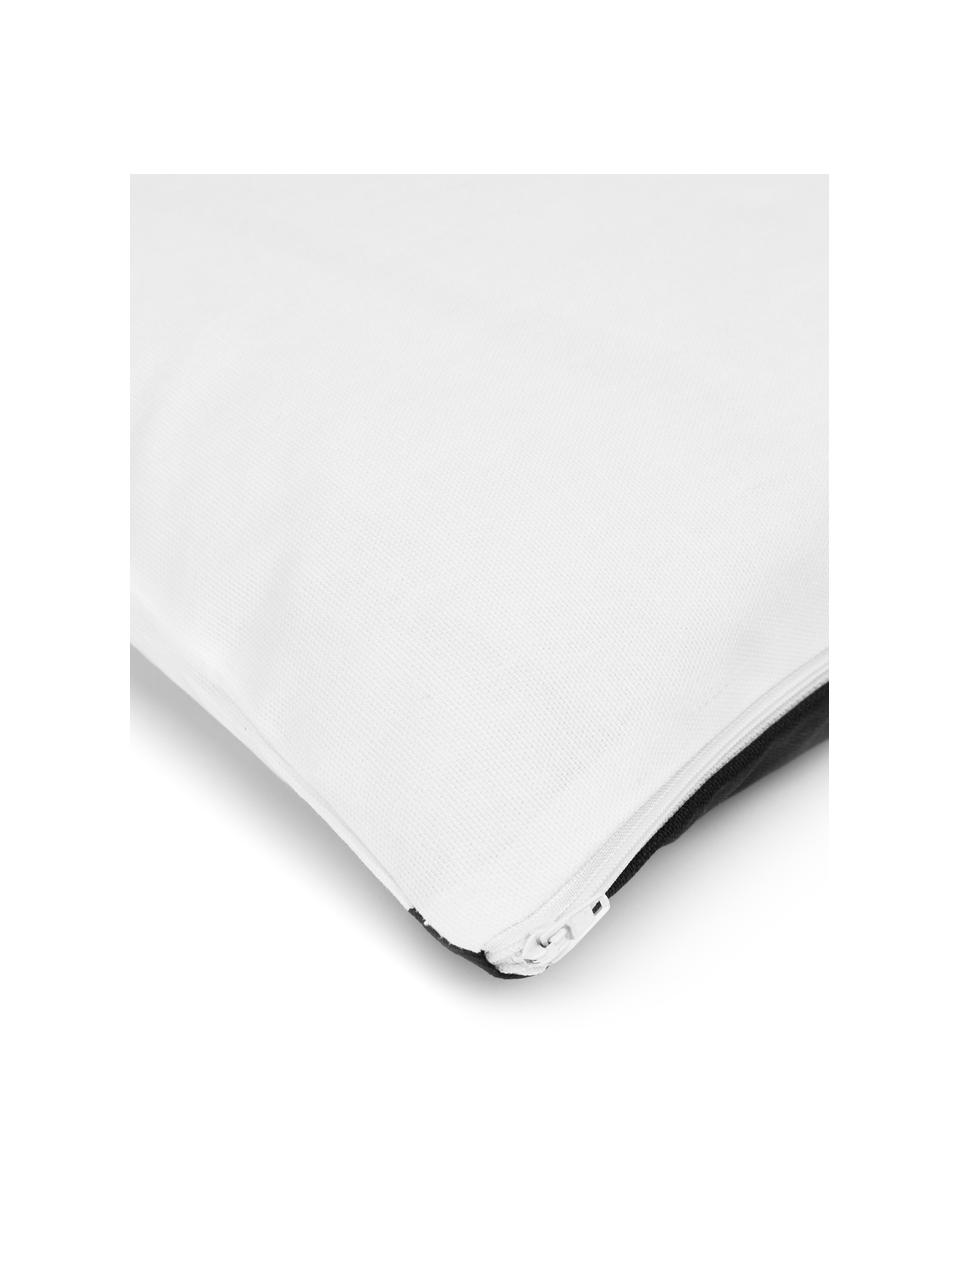 Gestreifte Kissenhülle Ren, 100% Baumwolle, Weiß, Schwarz, B 30 x L 50 cm